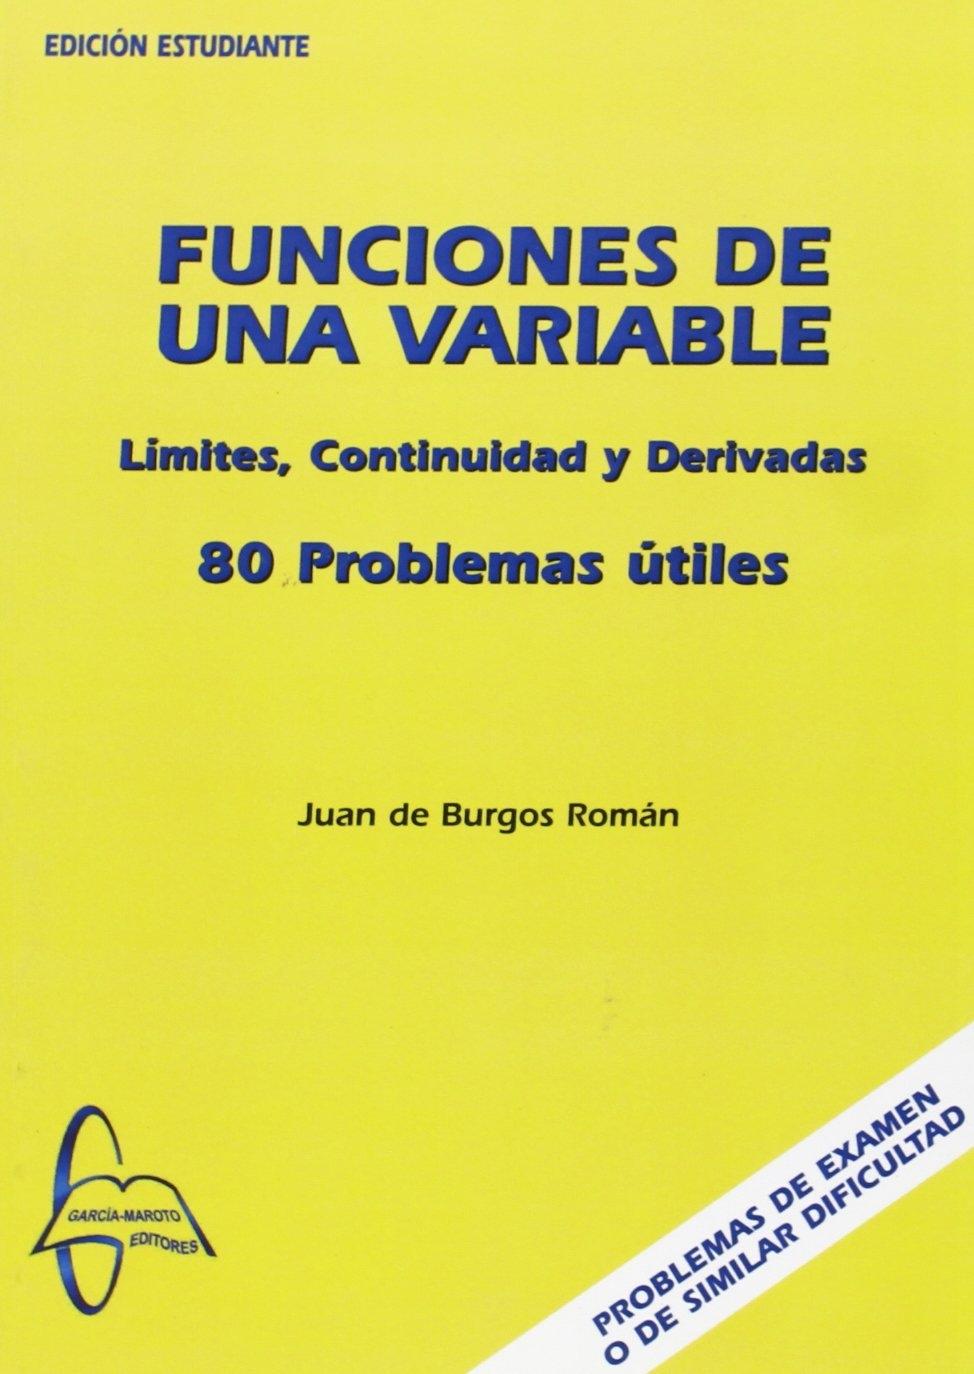 FUNCIONES DE UNA VARIABLE "80 PROBLEMAS ÚTILES"